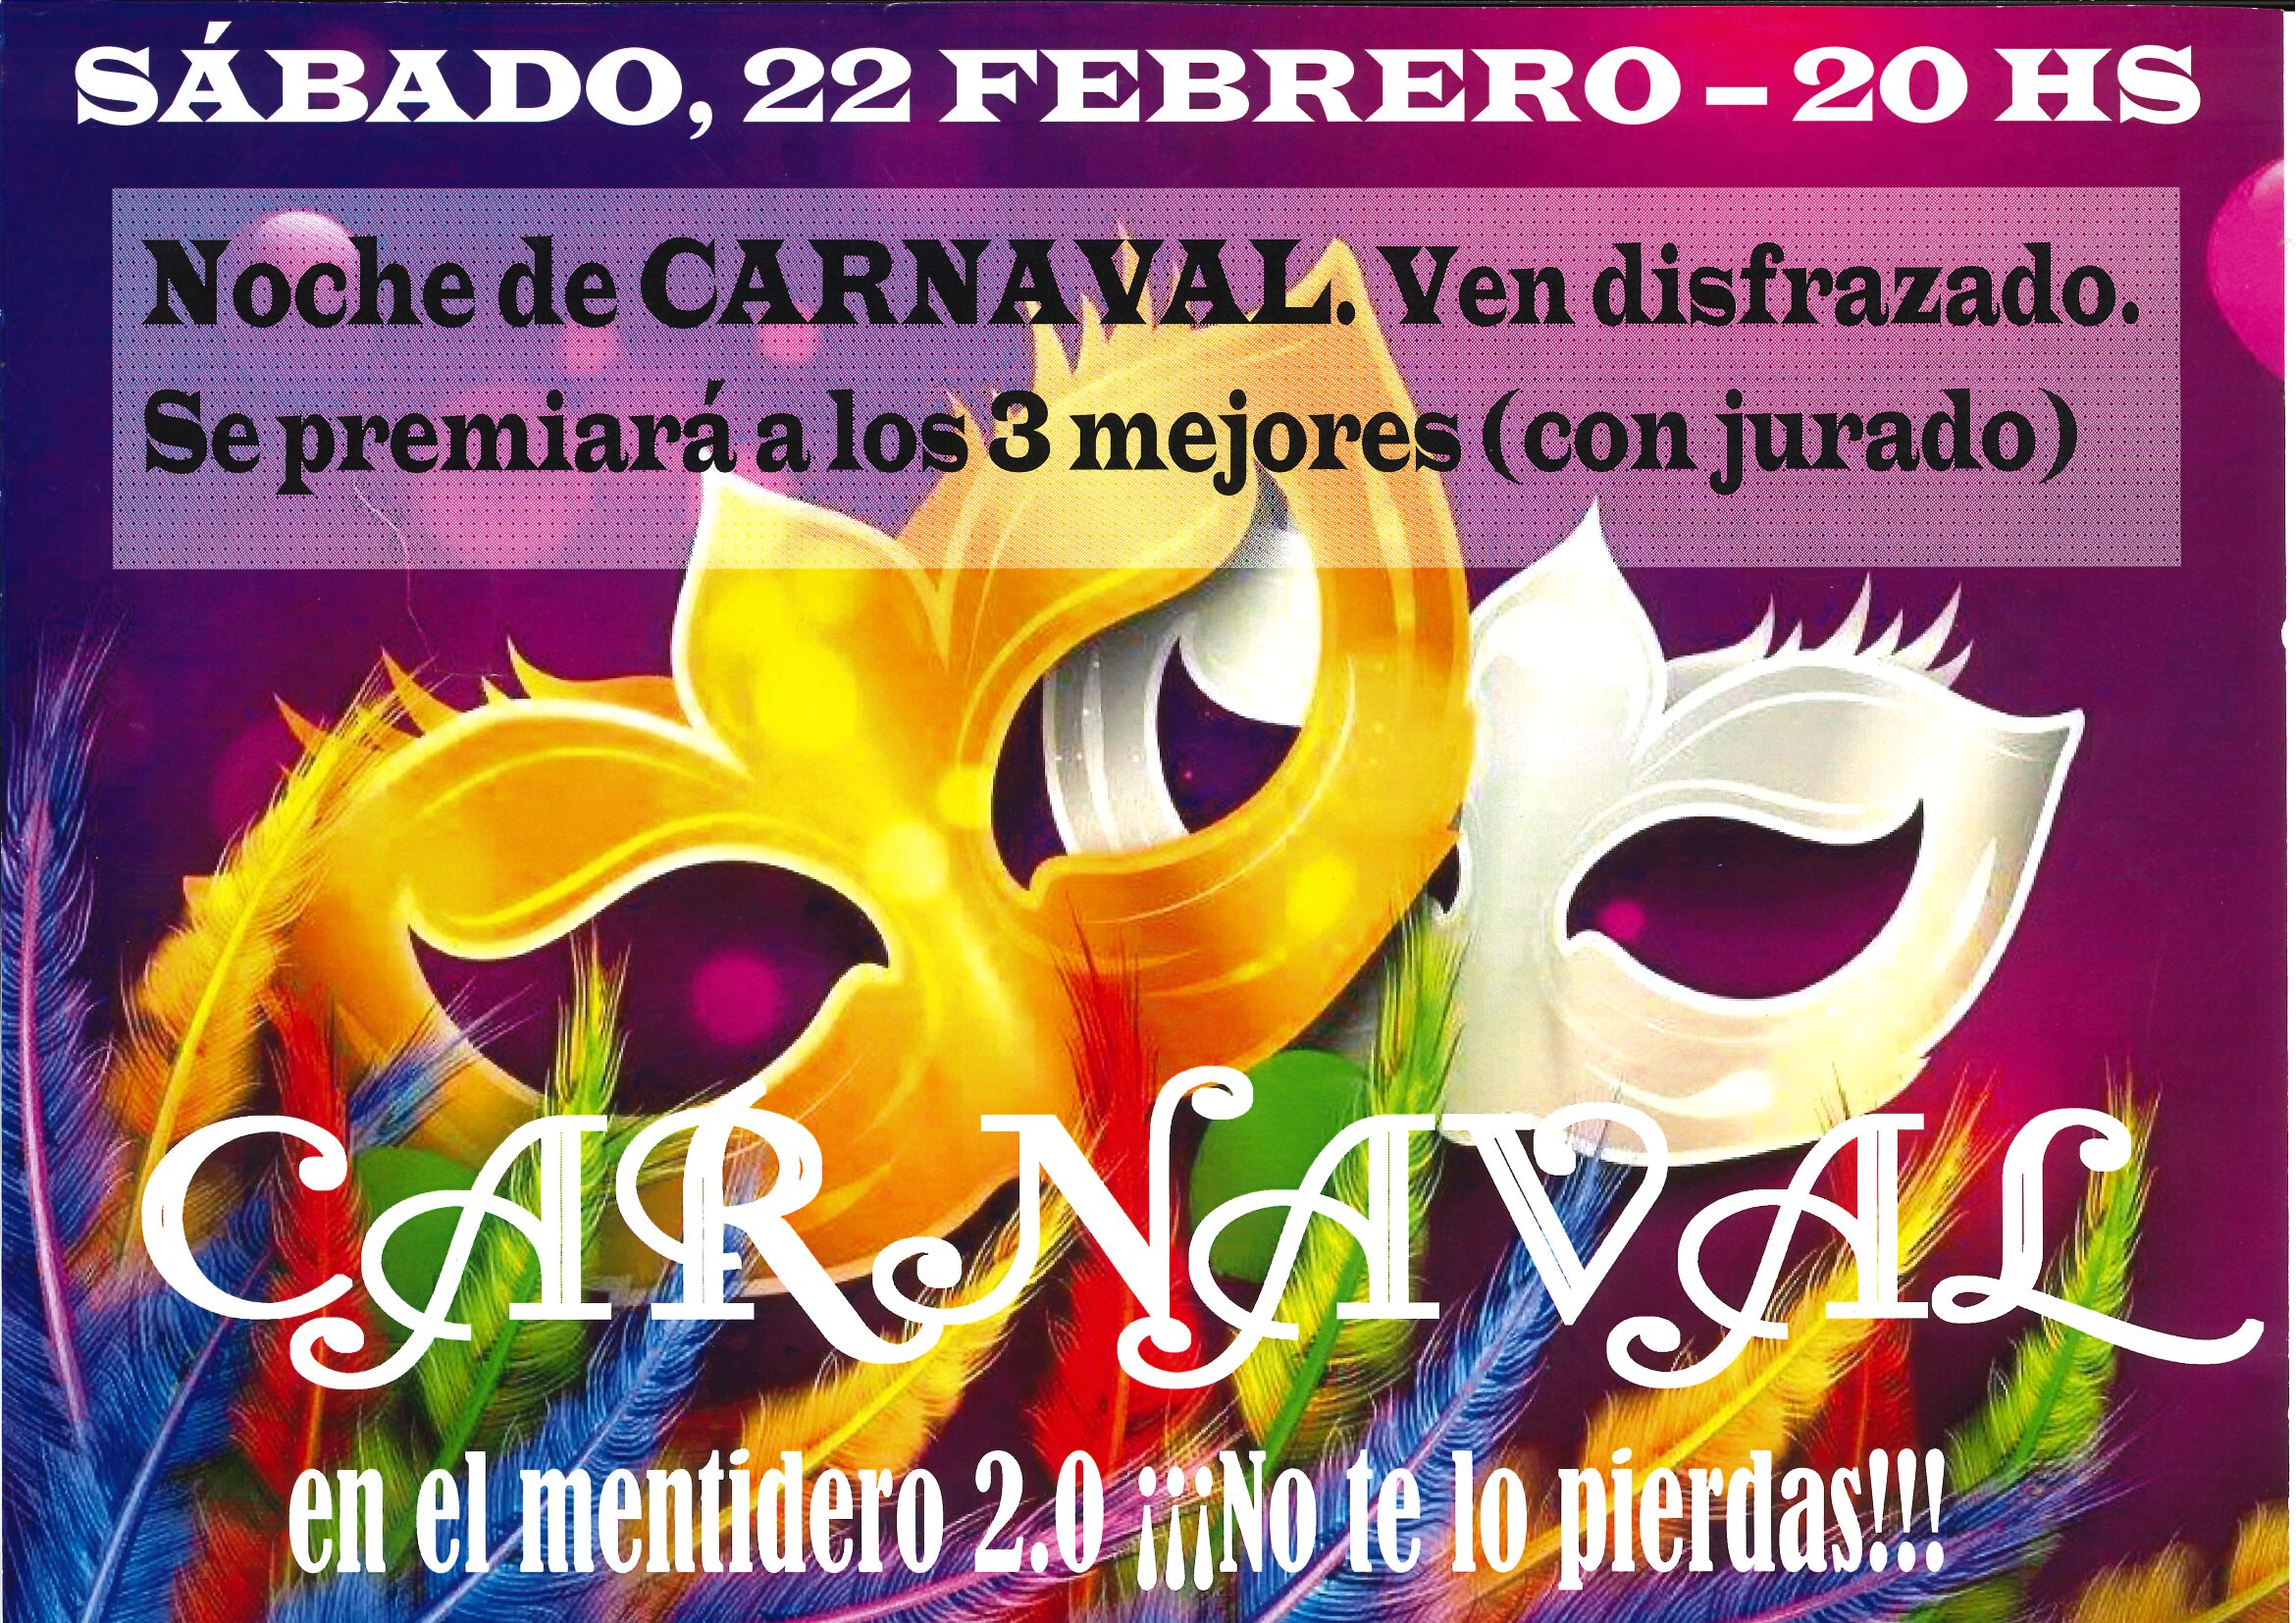 Carnaval en el Mentidero